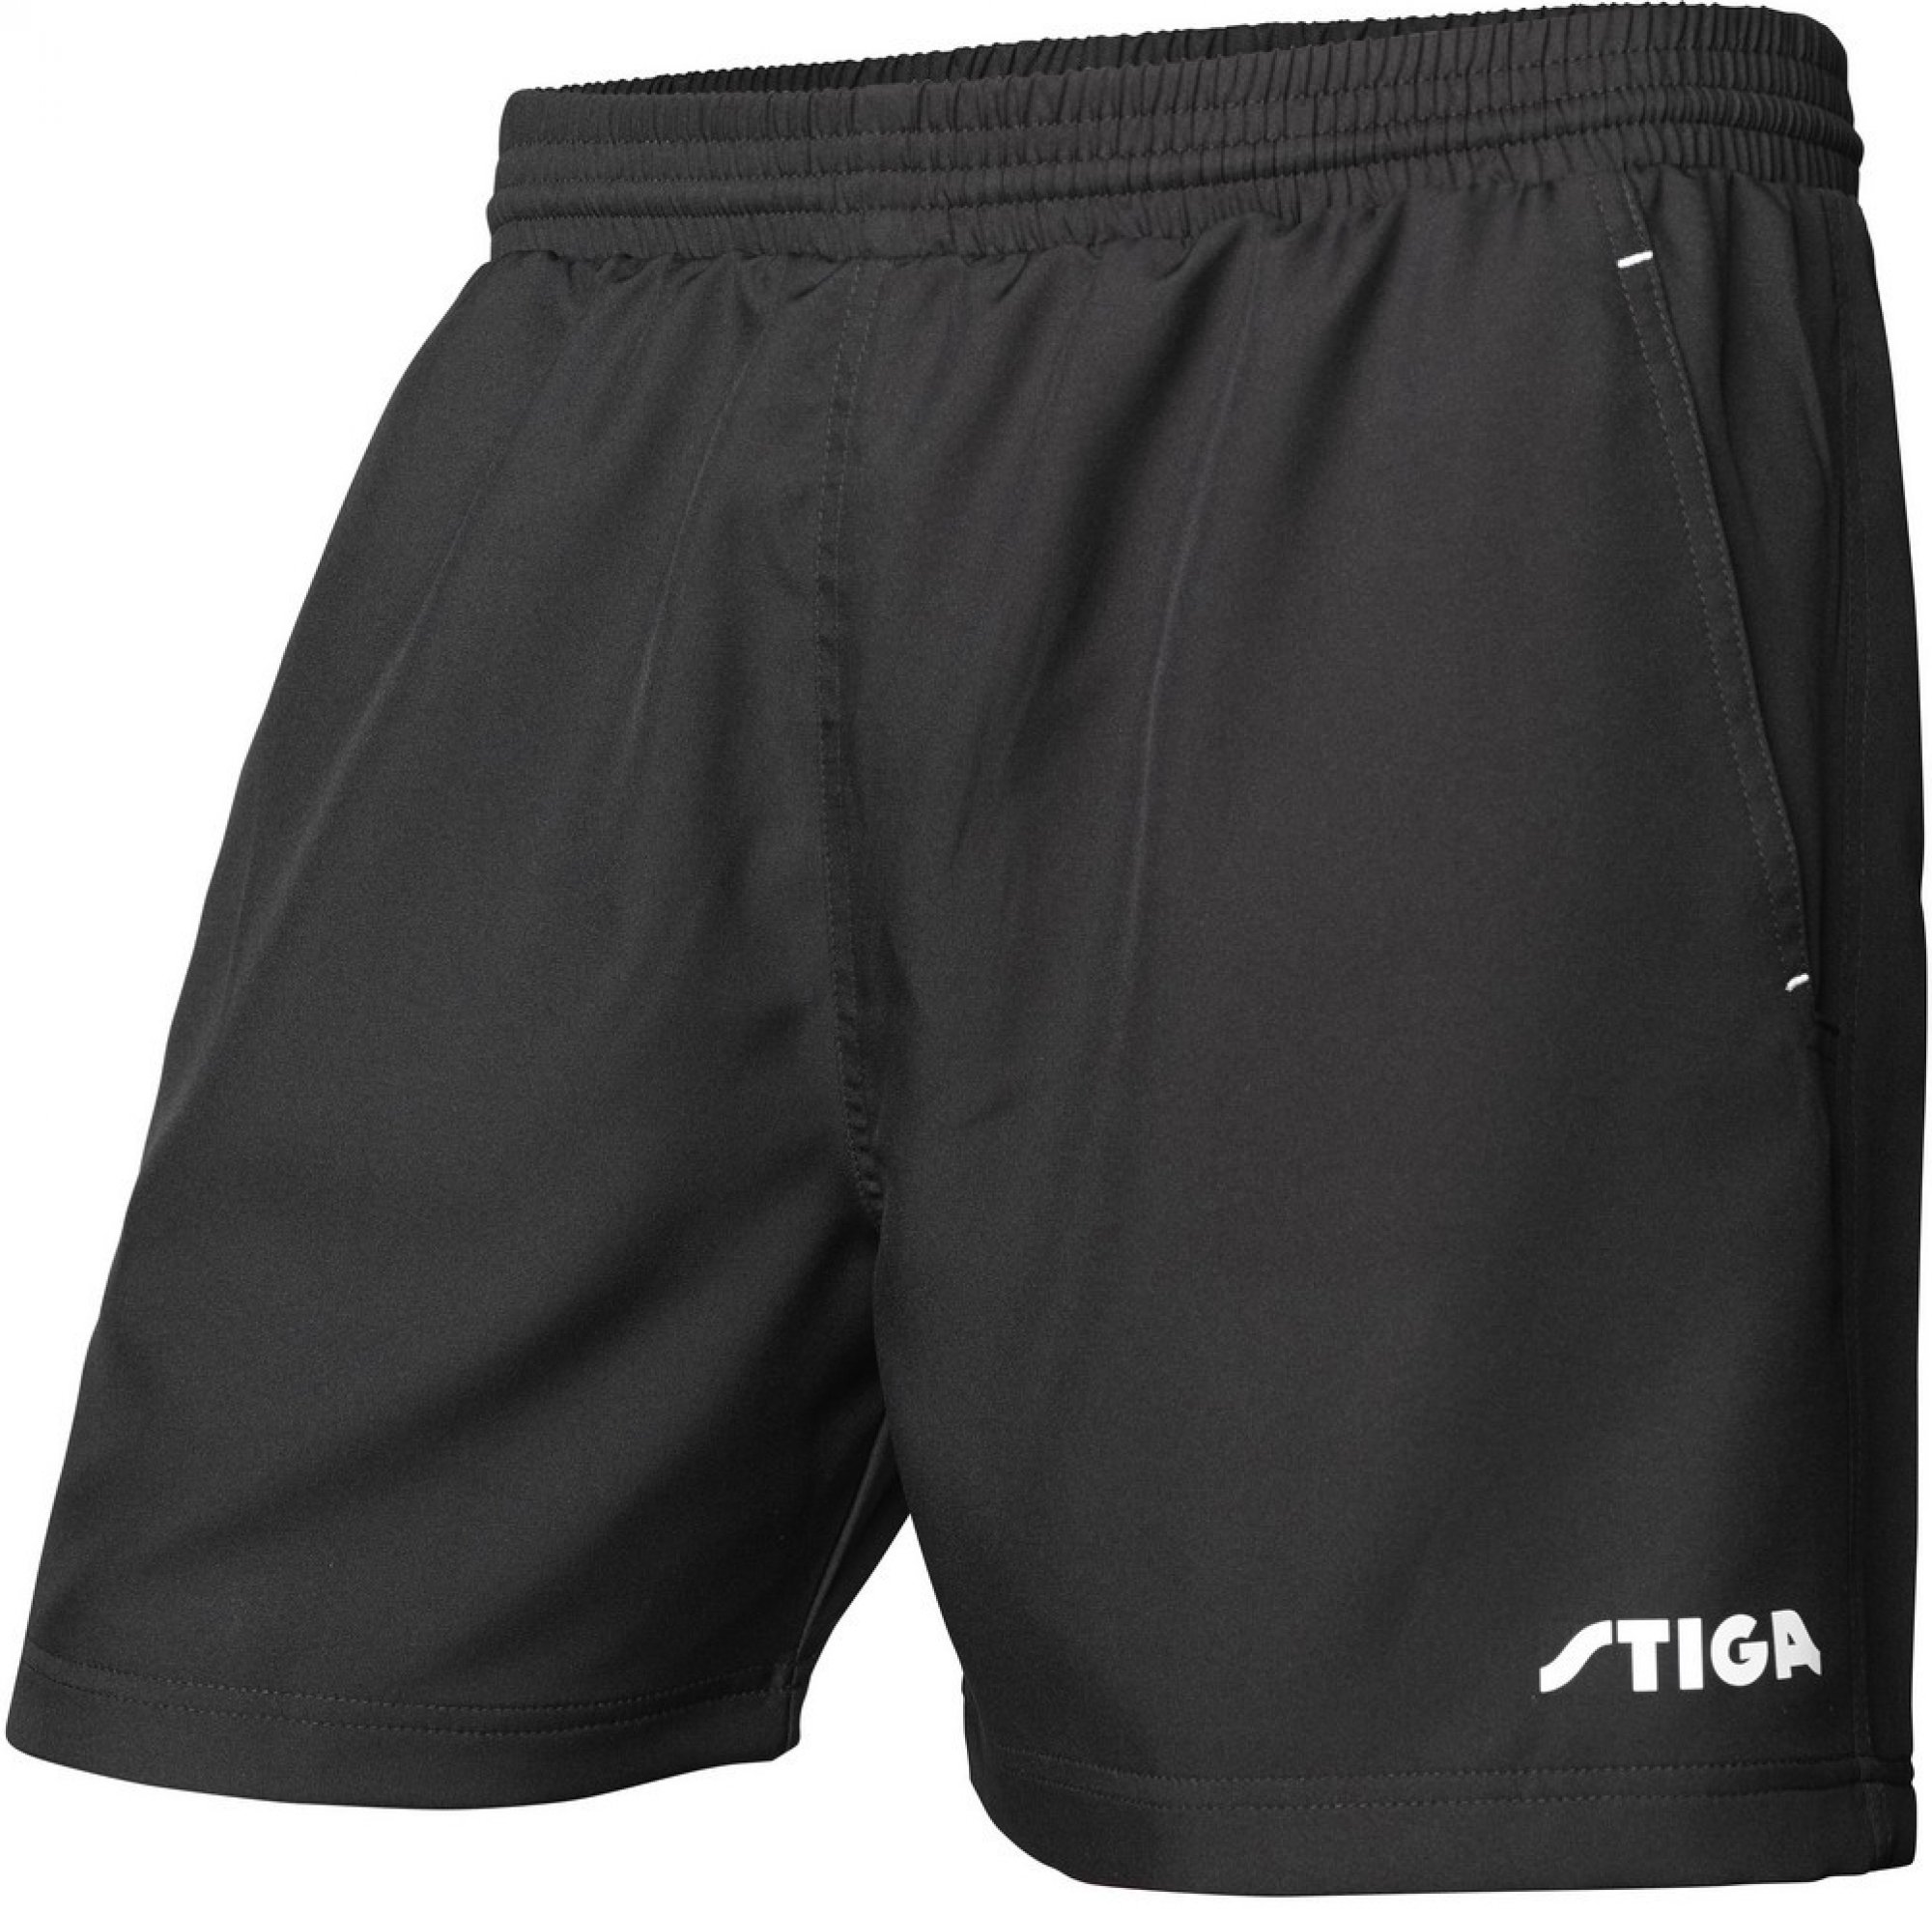 STIGA - Shorts Unit